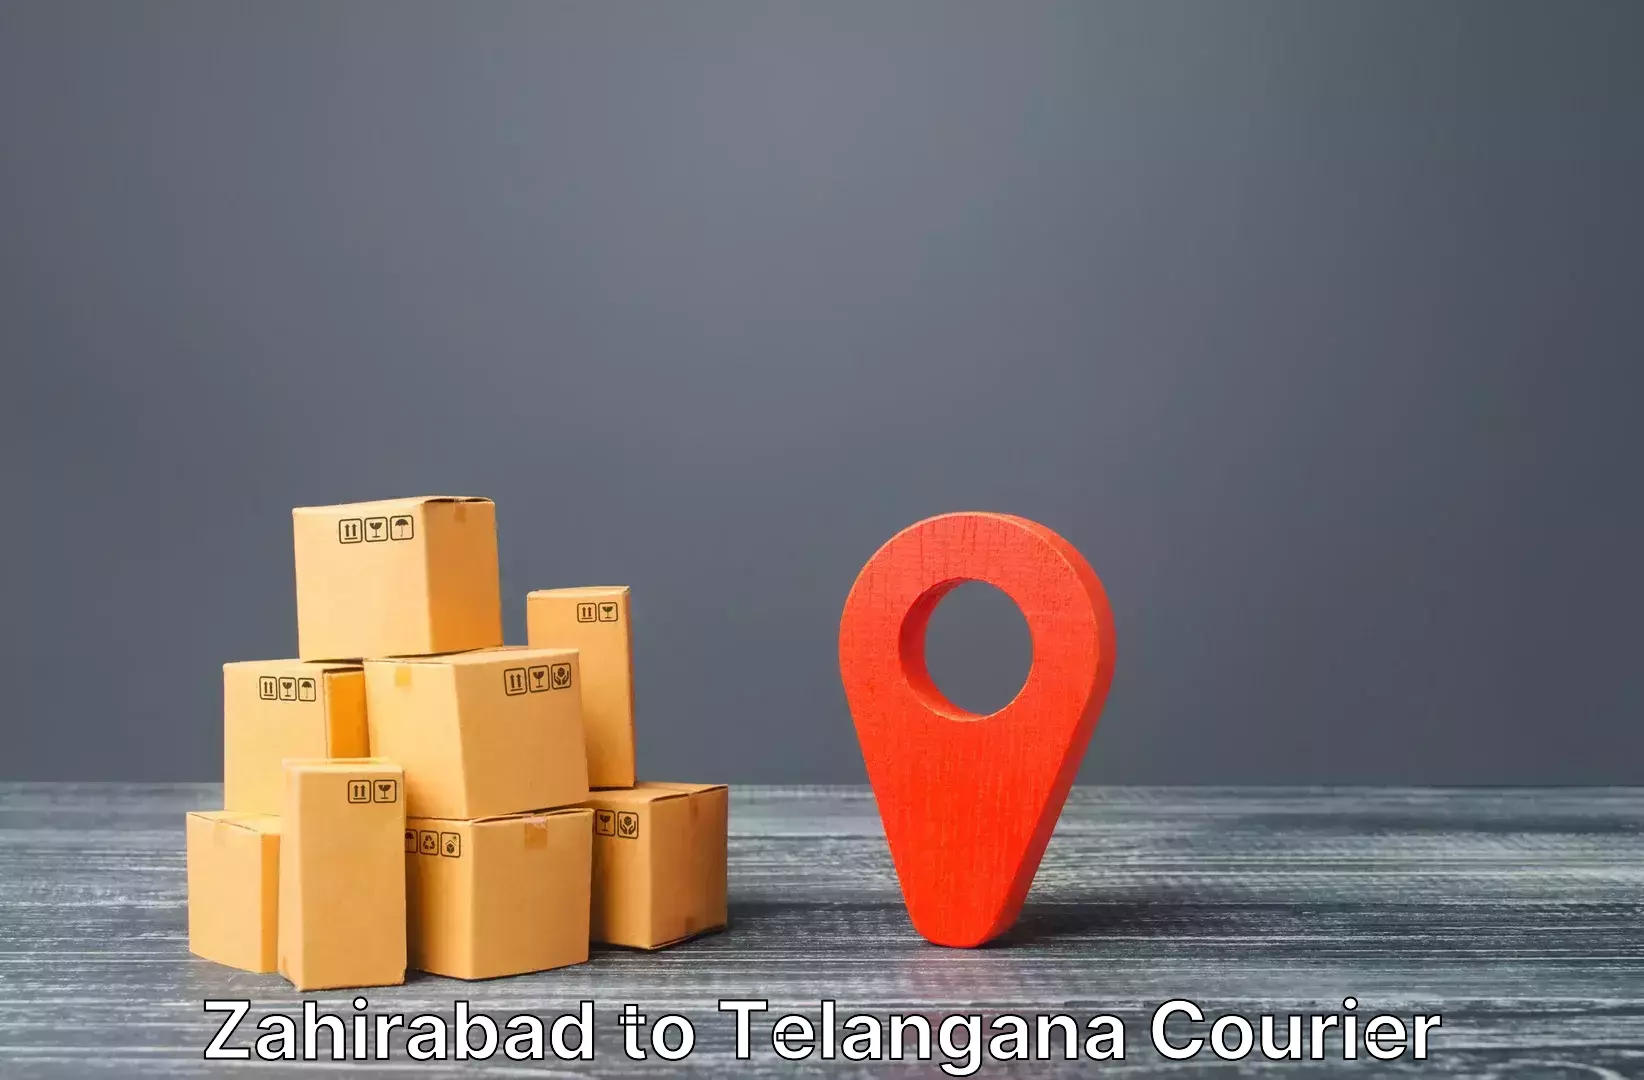 Luggage shipment specialists Zahirabad to IIT Hyderabad